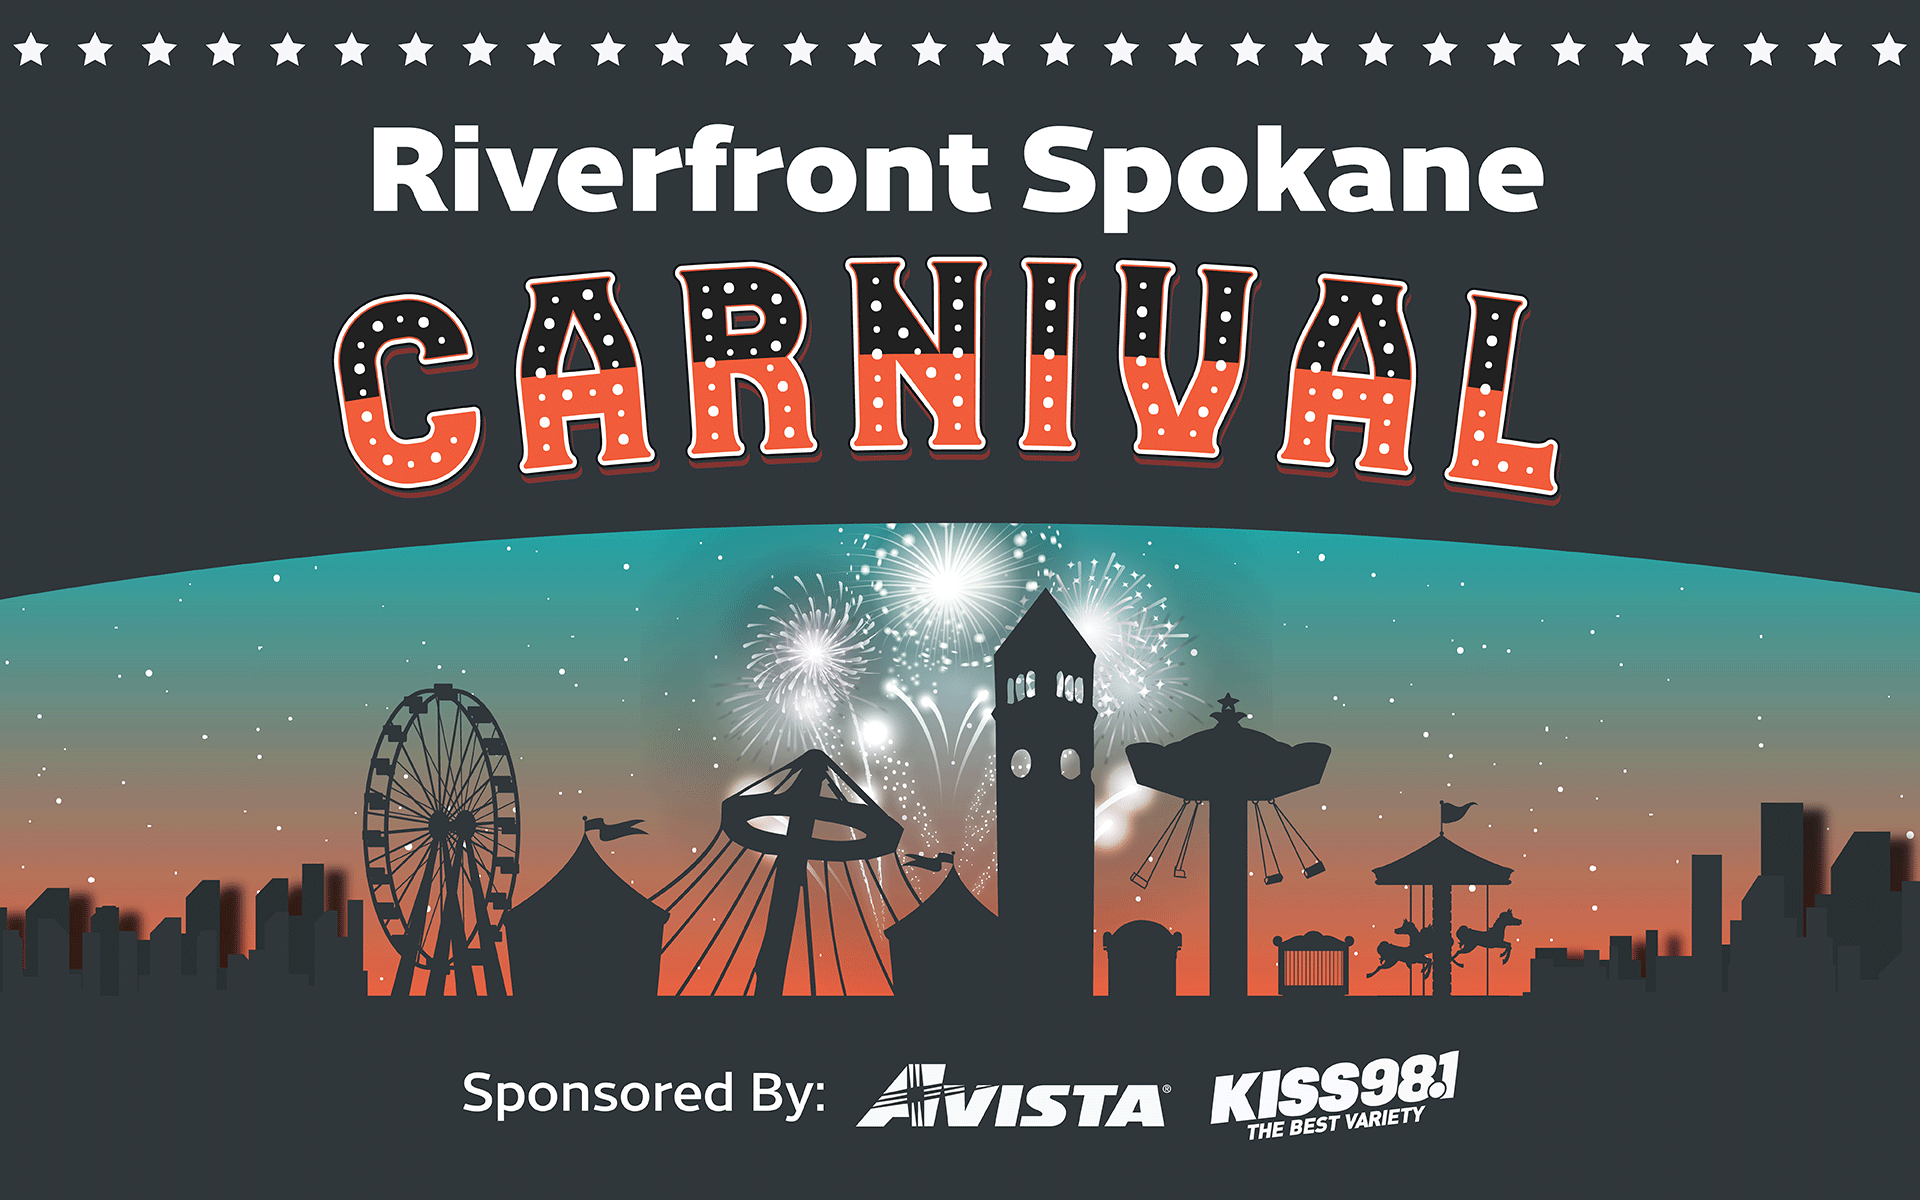 Riverfront Spokane Carnival City of Spokane, Washington